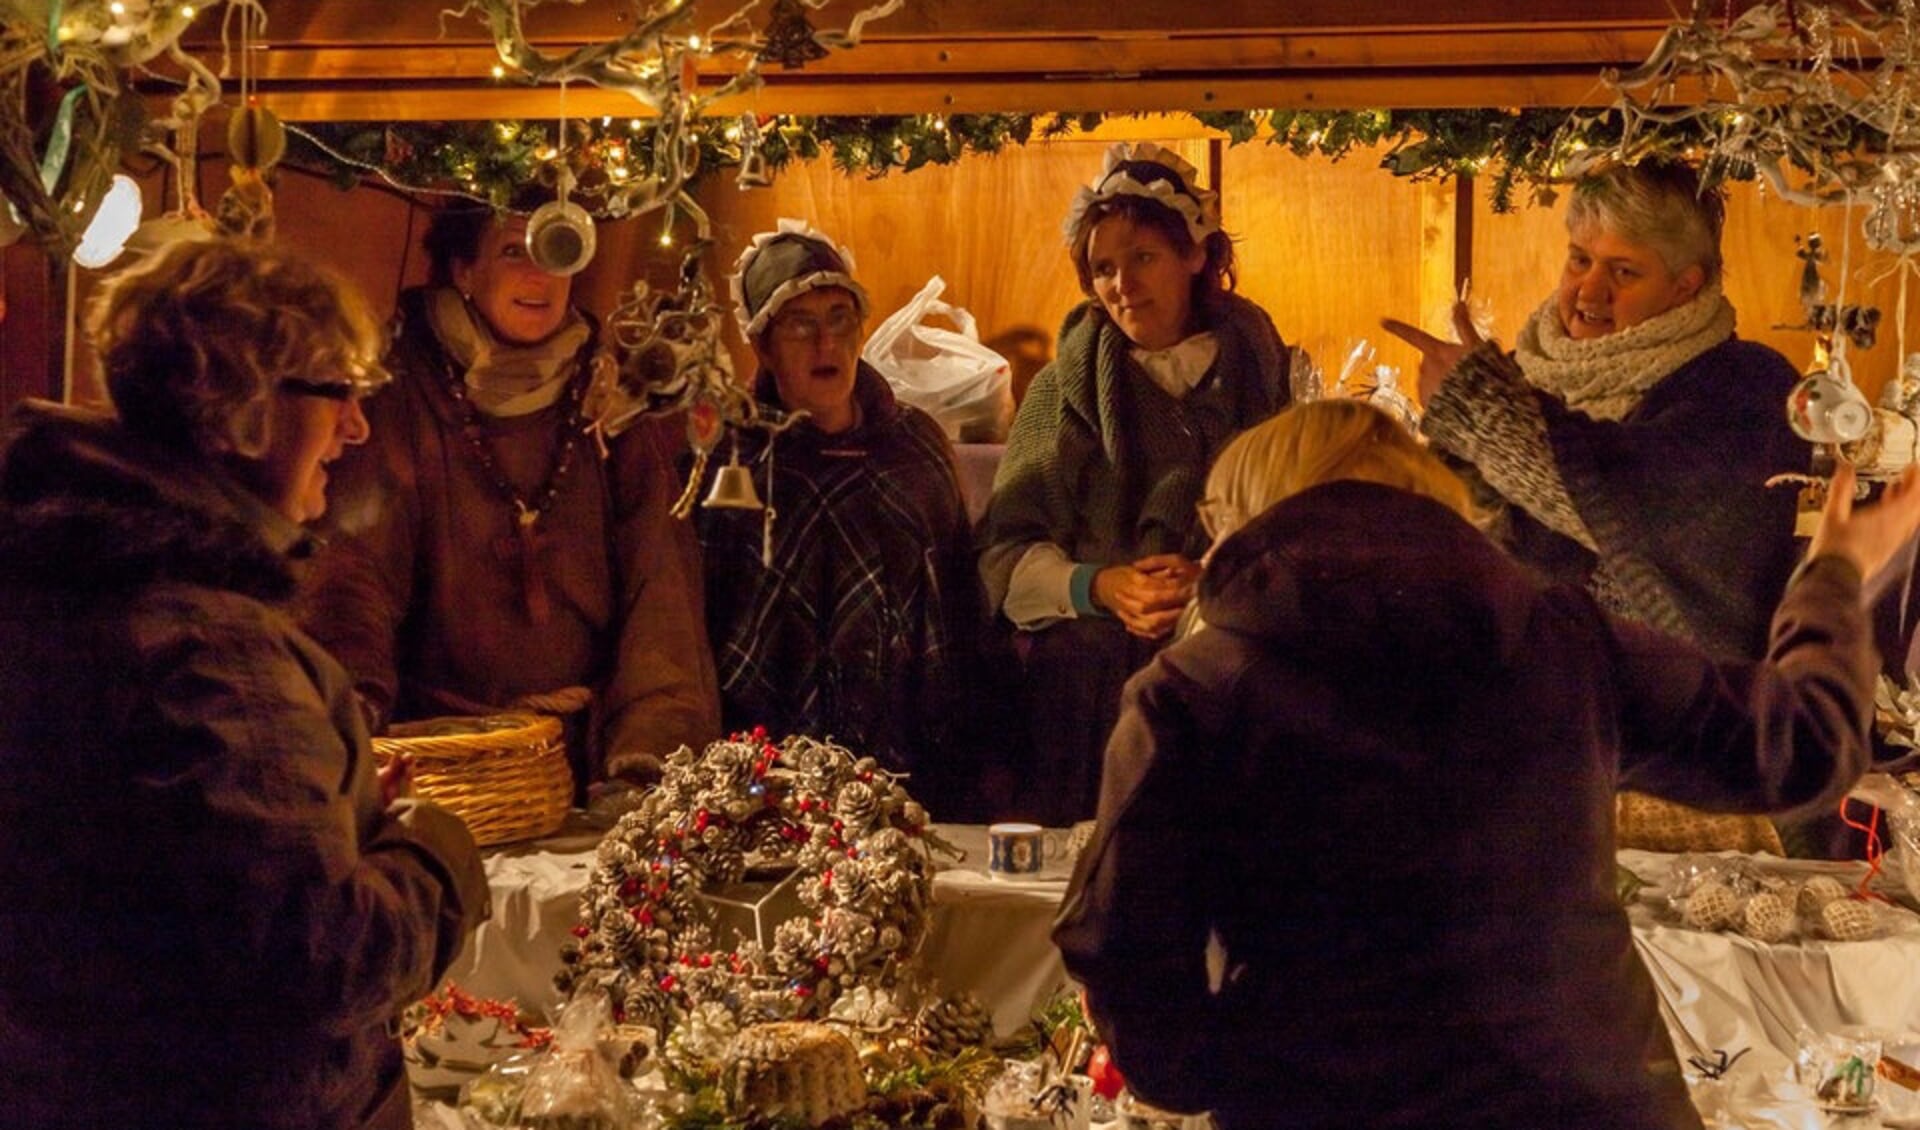 Een sfeervolle kerstmarkt wordt gehouden in Ons Dorpshuis in Annen,.